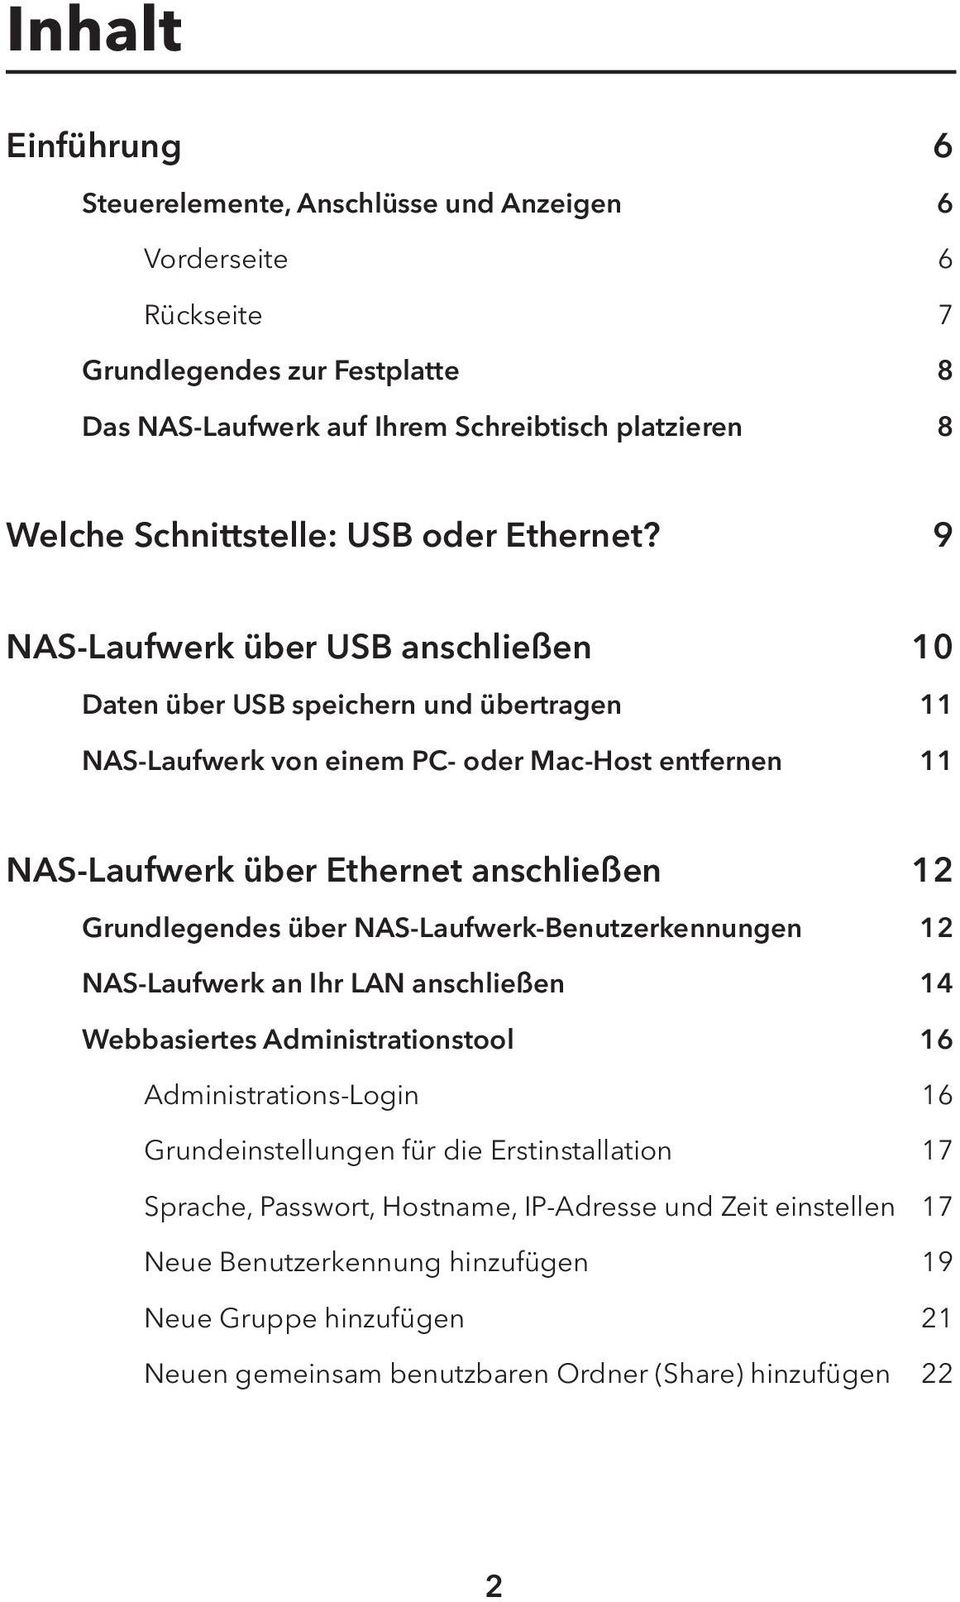 9 NAS-Laufwerk über USB anschließen 10 Daten über USB speichern und übertragen 11 NAS-Laufwerk von einem PC- oder Mac-Host entfernen 11 NAS-Laufwerk über Ethernet anschließen 12 Grundlegendes